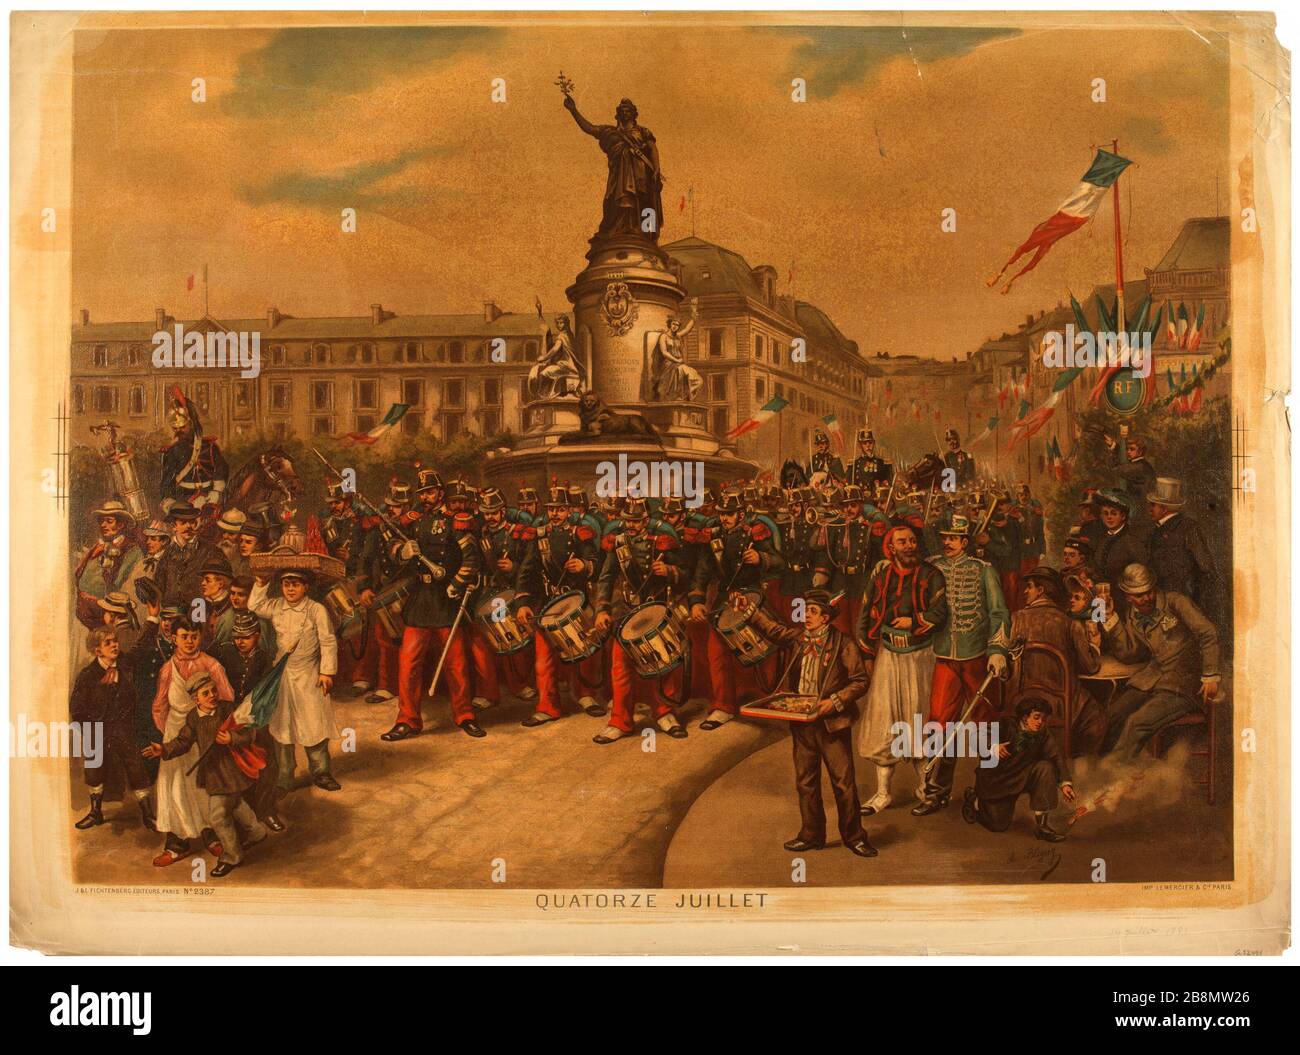 July fourteenth. Albert Bligny (1849-1908). 'Quatorze Juillet'. Procédé photomécanique. Paris, musée Carnavalet. Stock Photo